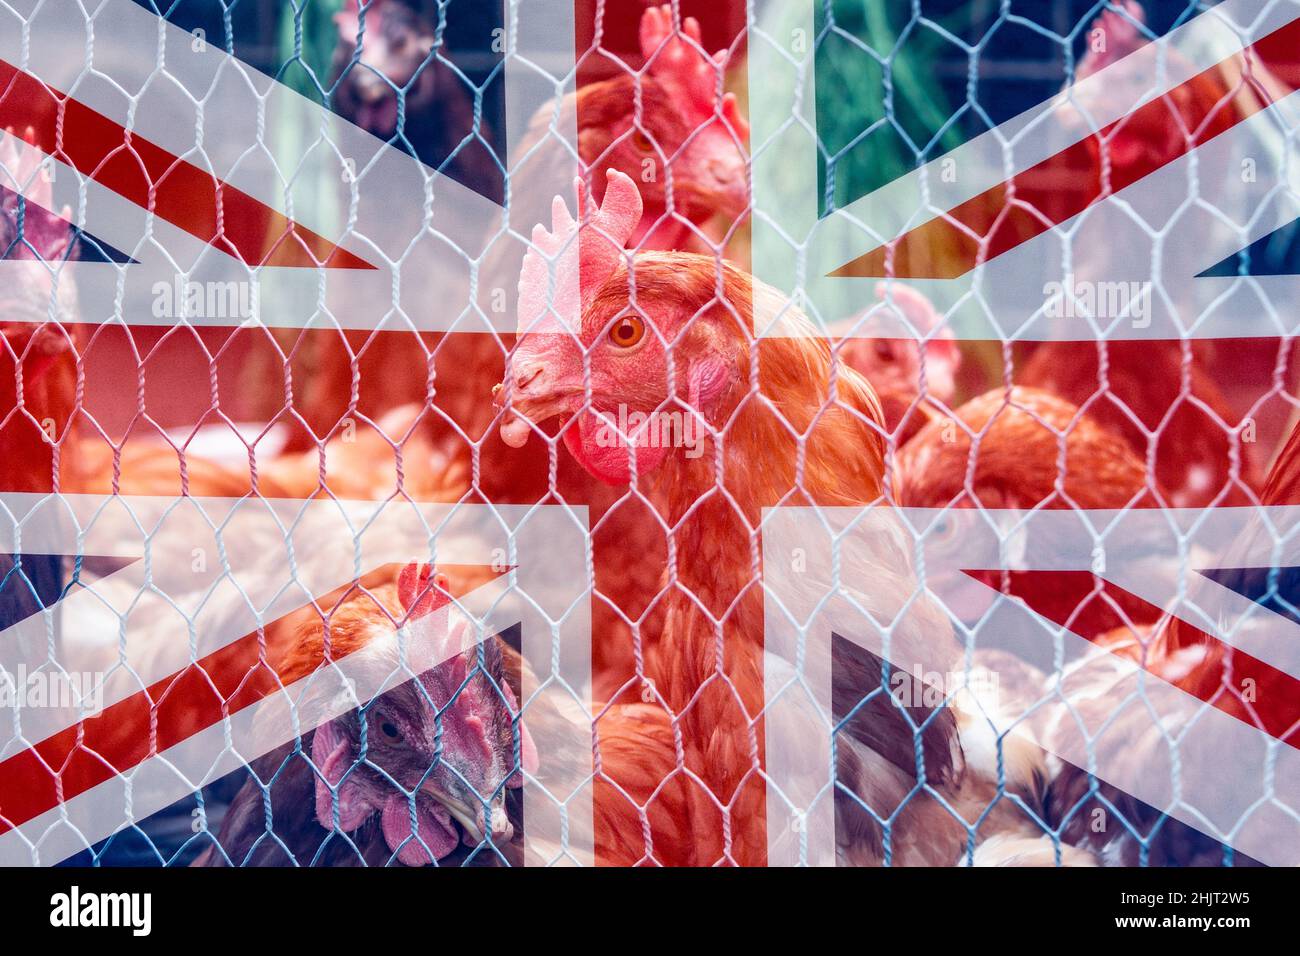 Aves de corral, pollos, gallinas al aire libre detrás de la valla de alambre de pollo con bandera del Reino Unido superpuesta. Brexit, rango libre, reino unido, agricultura intensiva, trabajadores avícolas, concepto Foto de stock